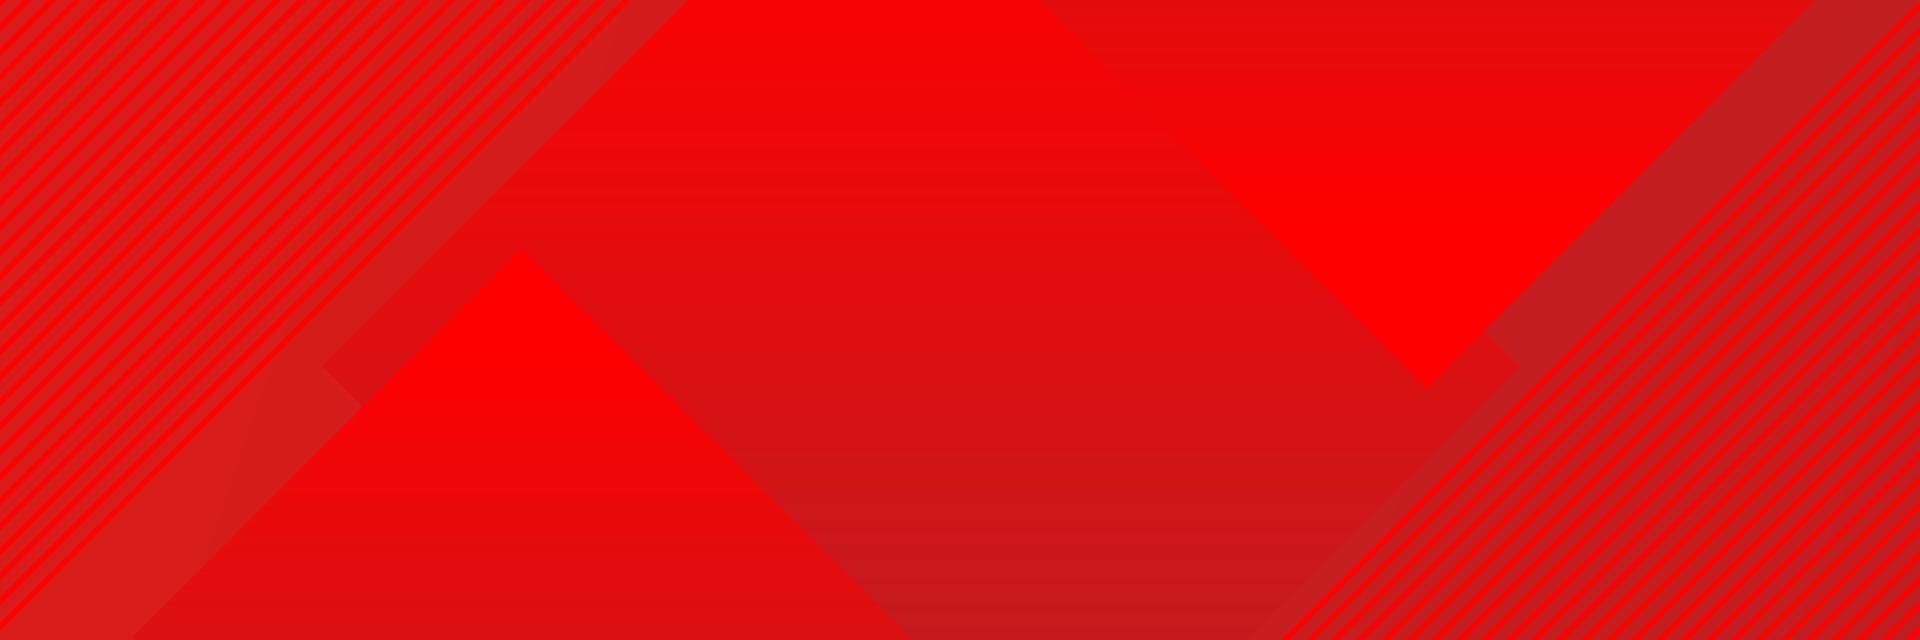 modern rood abstract achtergrond. sjabloon voor banier, website, poster vector